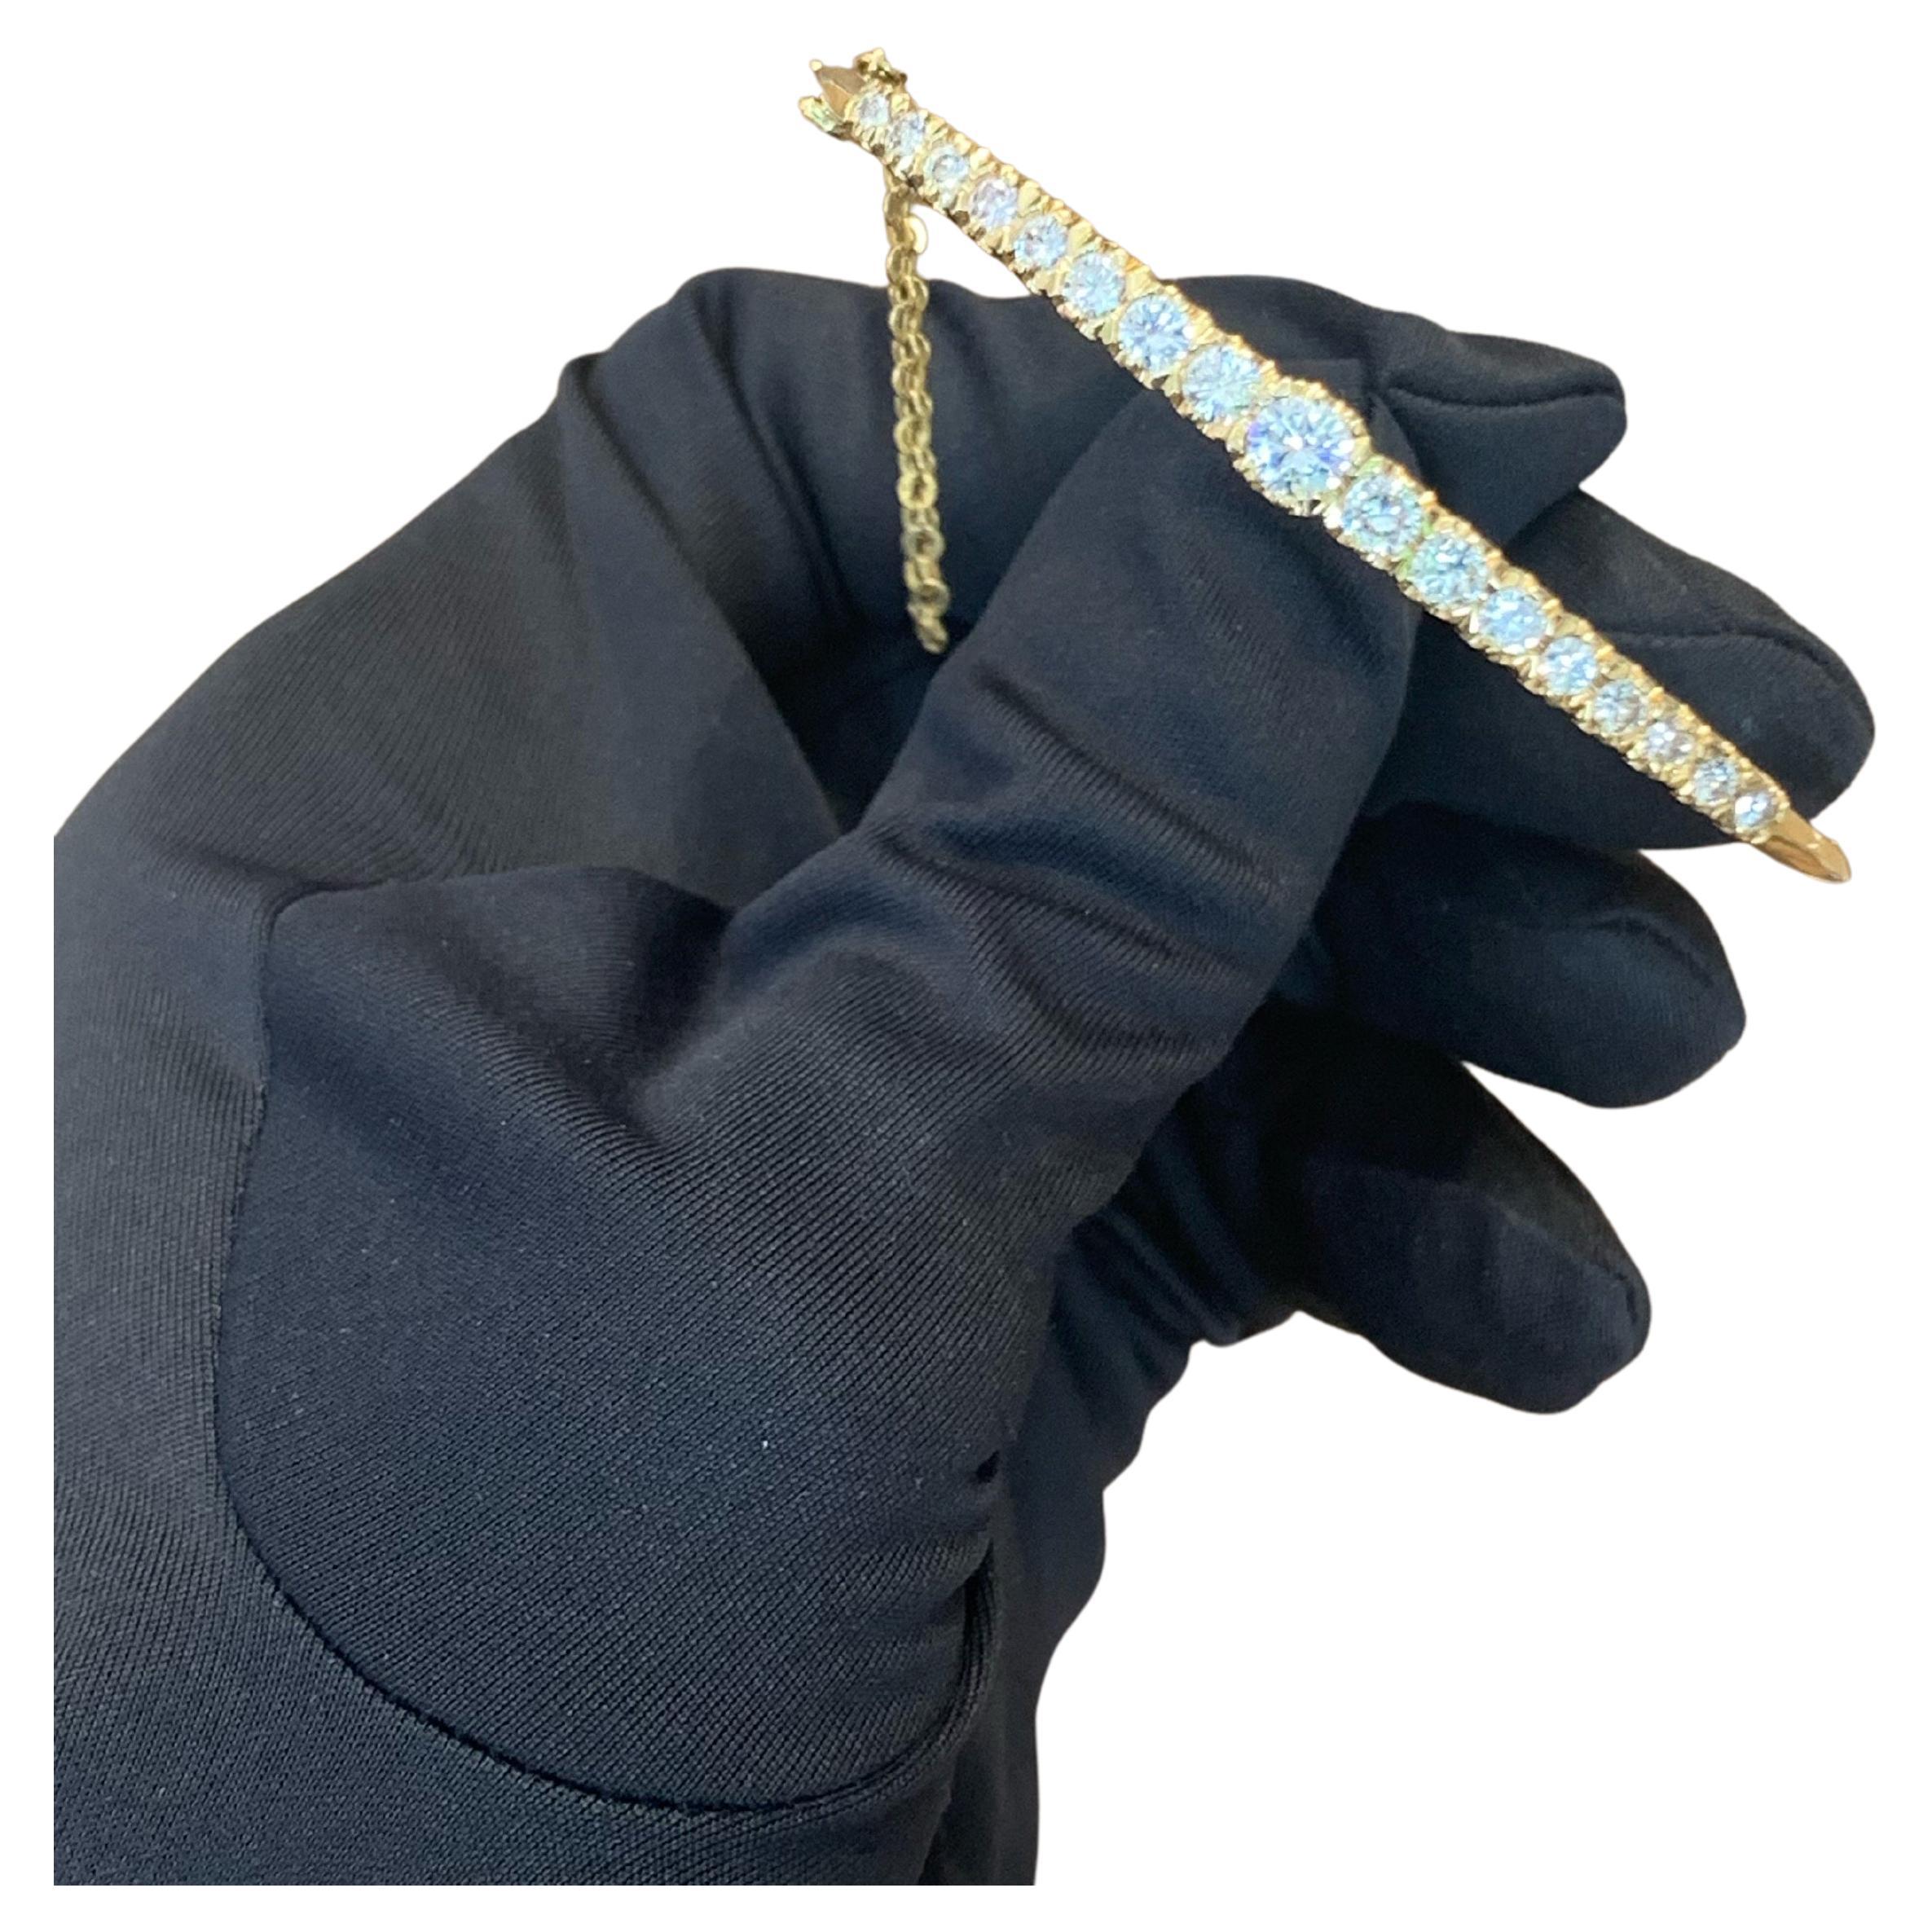 18k Gold 5.0 Carats Diamond Bangle Bracelet